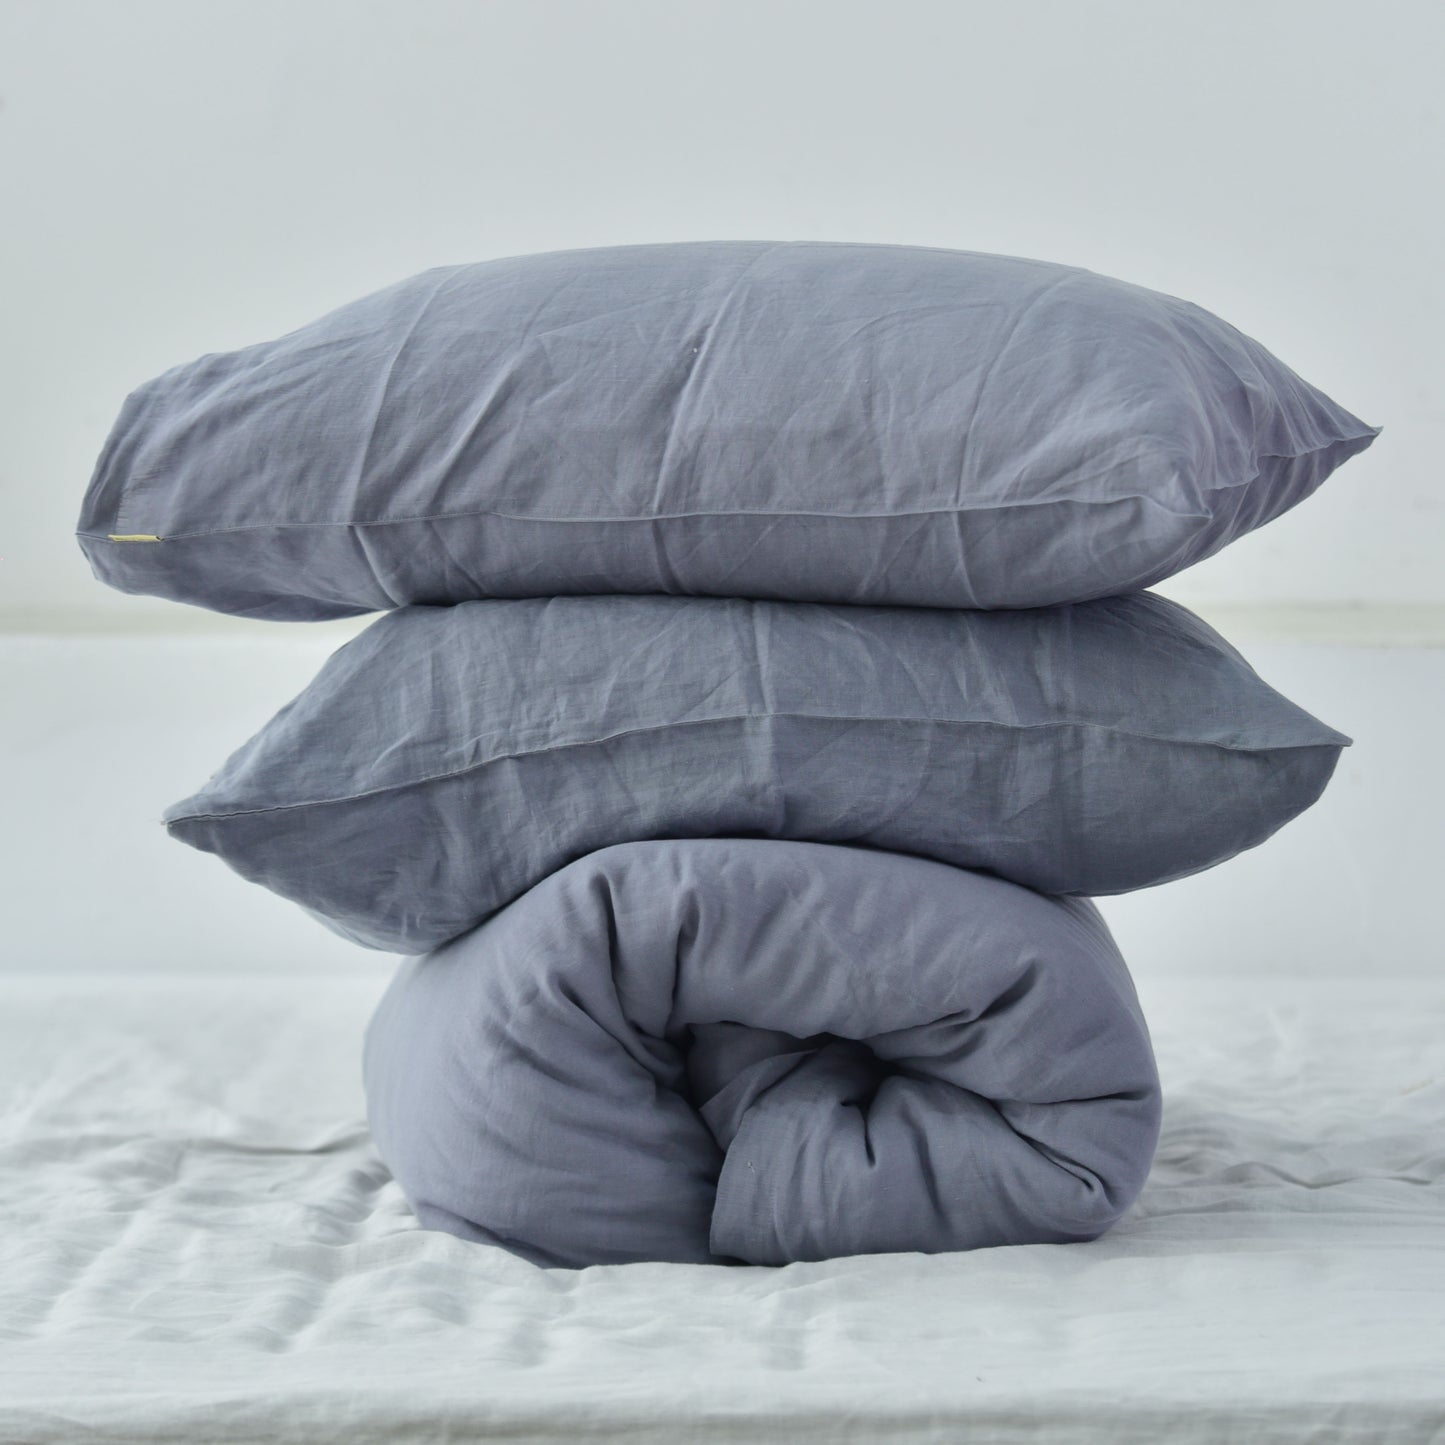 Steel French Linen Duvet Cover+2 Pillowcases Set - Plain Dyeing 24